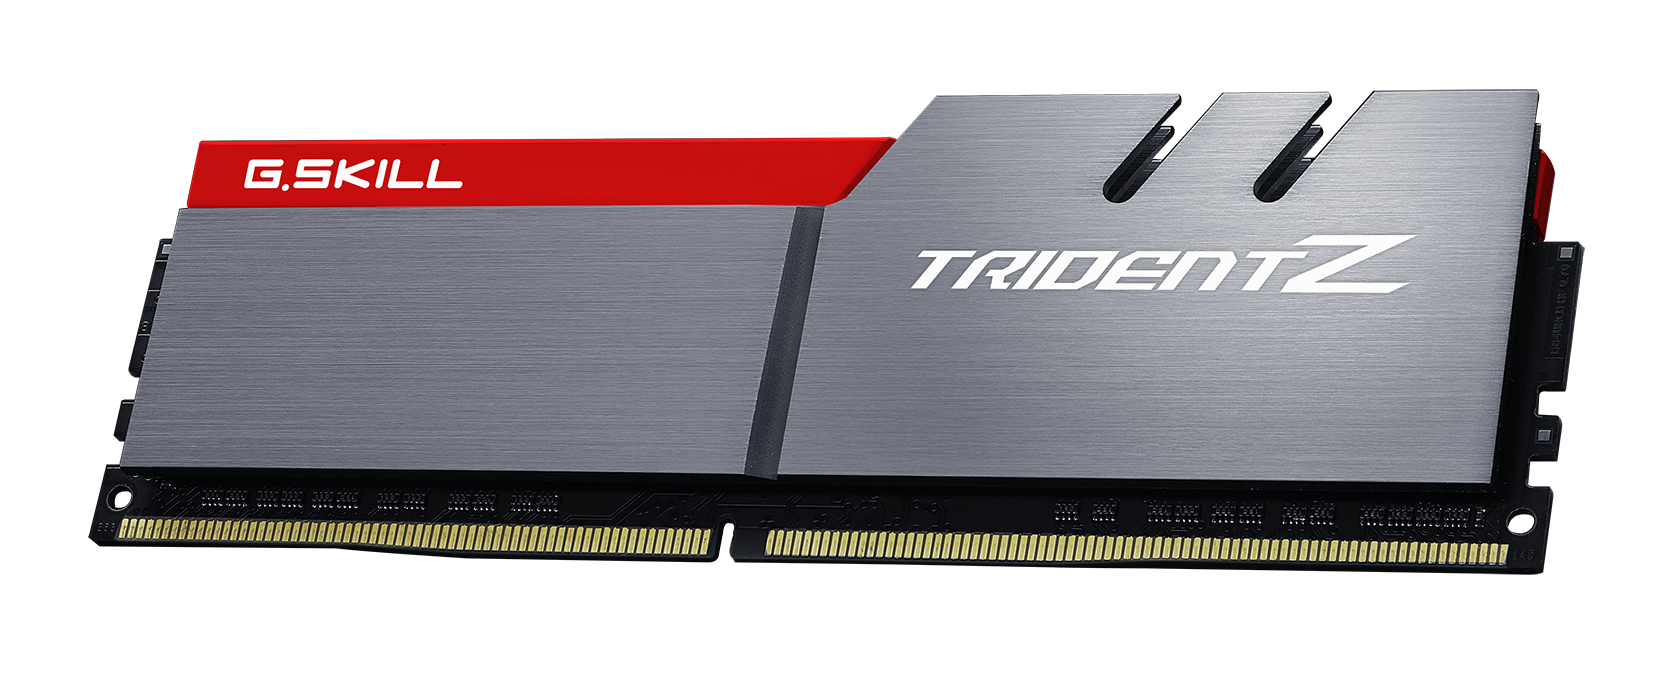 Immagine pubblicata in relazione al seguente contenuto: G.SKILL annuncia il kit di memoria Trident Z DDR4 3600MHz CL17 64GB | Nome immagine: news25208_G-SKILL-DDR4-3600-KIT-64GB_1.png